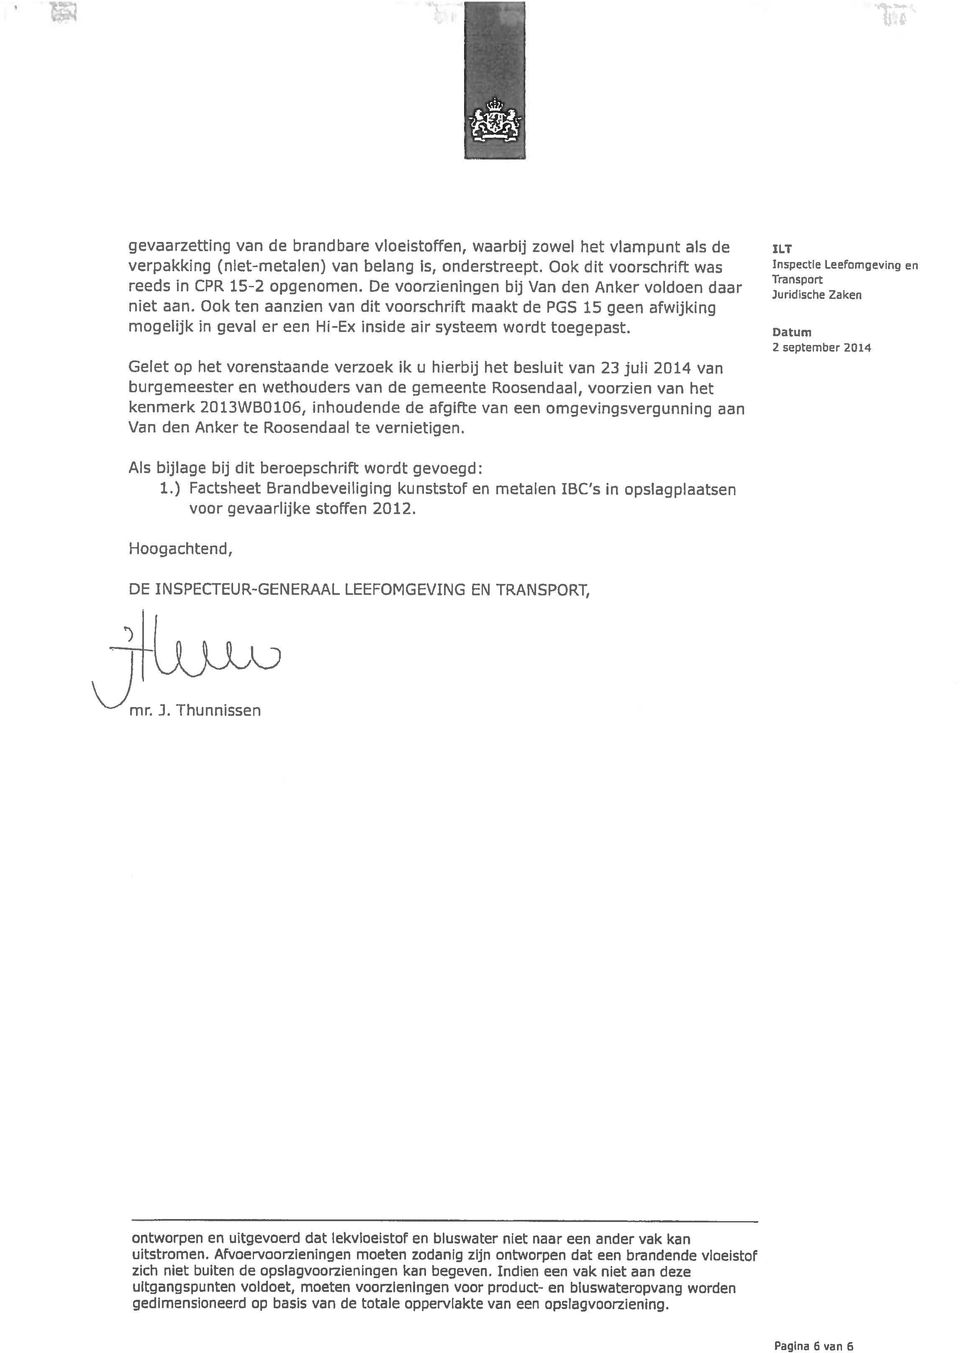 Gelet op het vorenstaande verzoek ik u hierbij het besluit van 23 juli 2014 van burgemeester en wethouders van de gemeente Roosendaal, voorzien van het kenmerk 2013WB0106, inhoudende de afgifte van